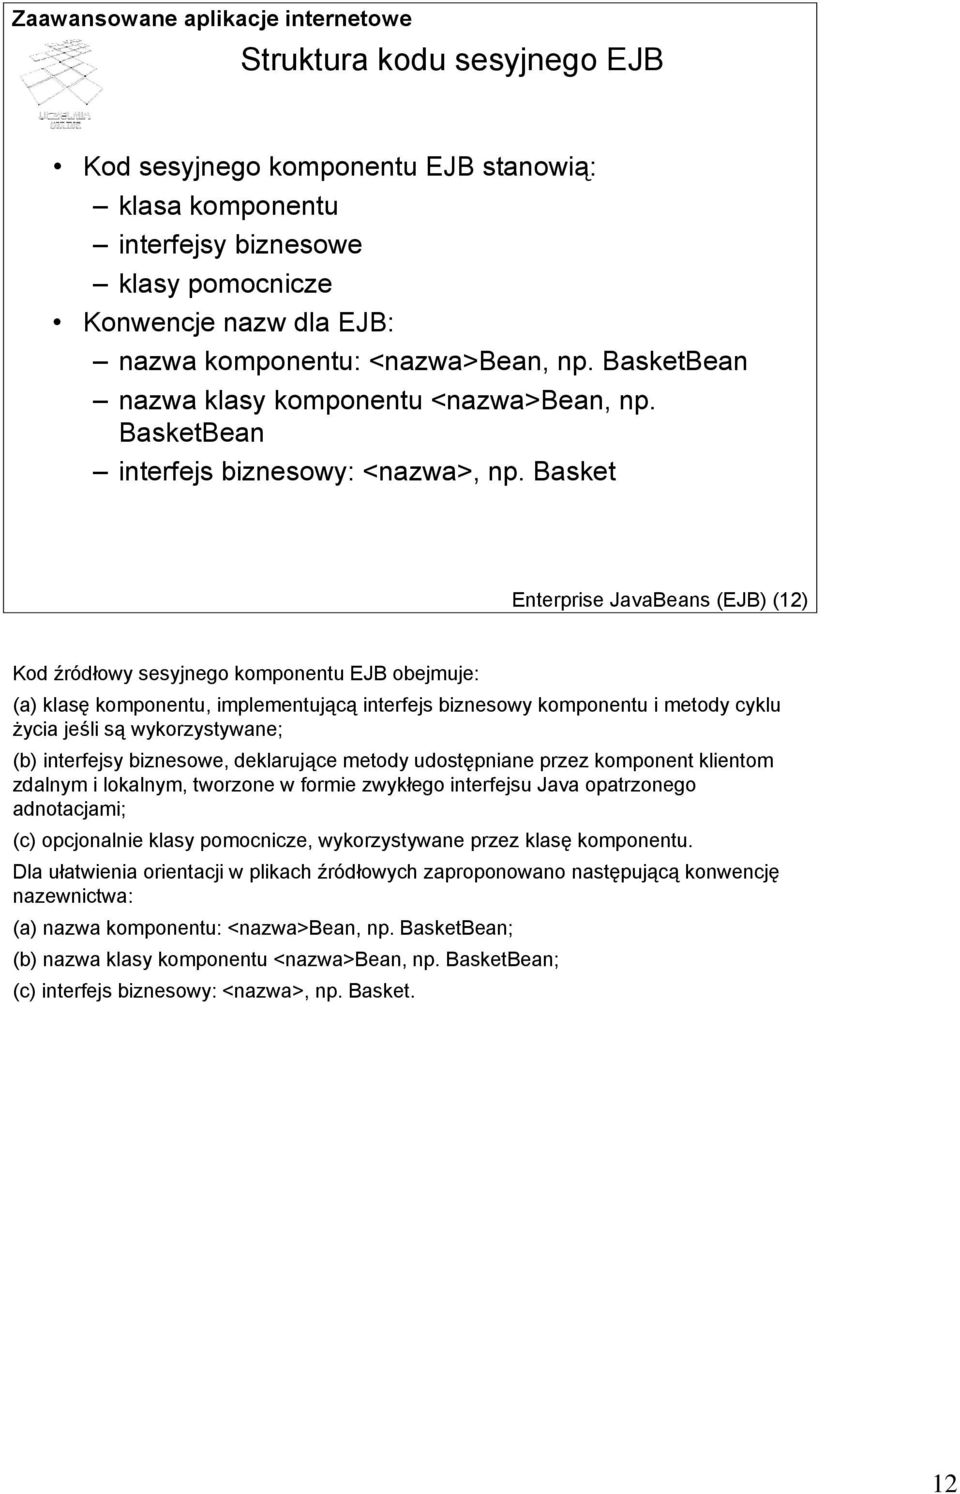 Basket Enterprise JavaBeans (EJB) (12) Kod źródłowy sesyjnego komponentu EJB obejmuje: (a) klasę komponentu, implementującą interfejs biznesowy komponentu i metody cyklu życia jeśli są